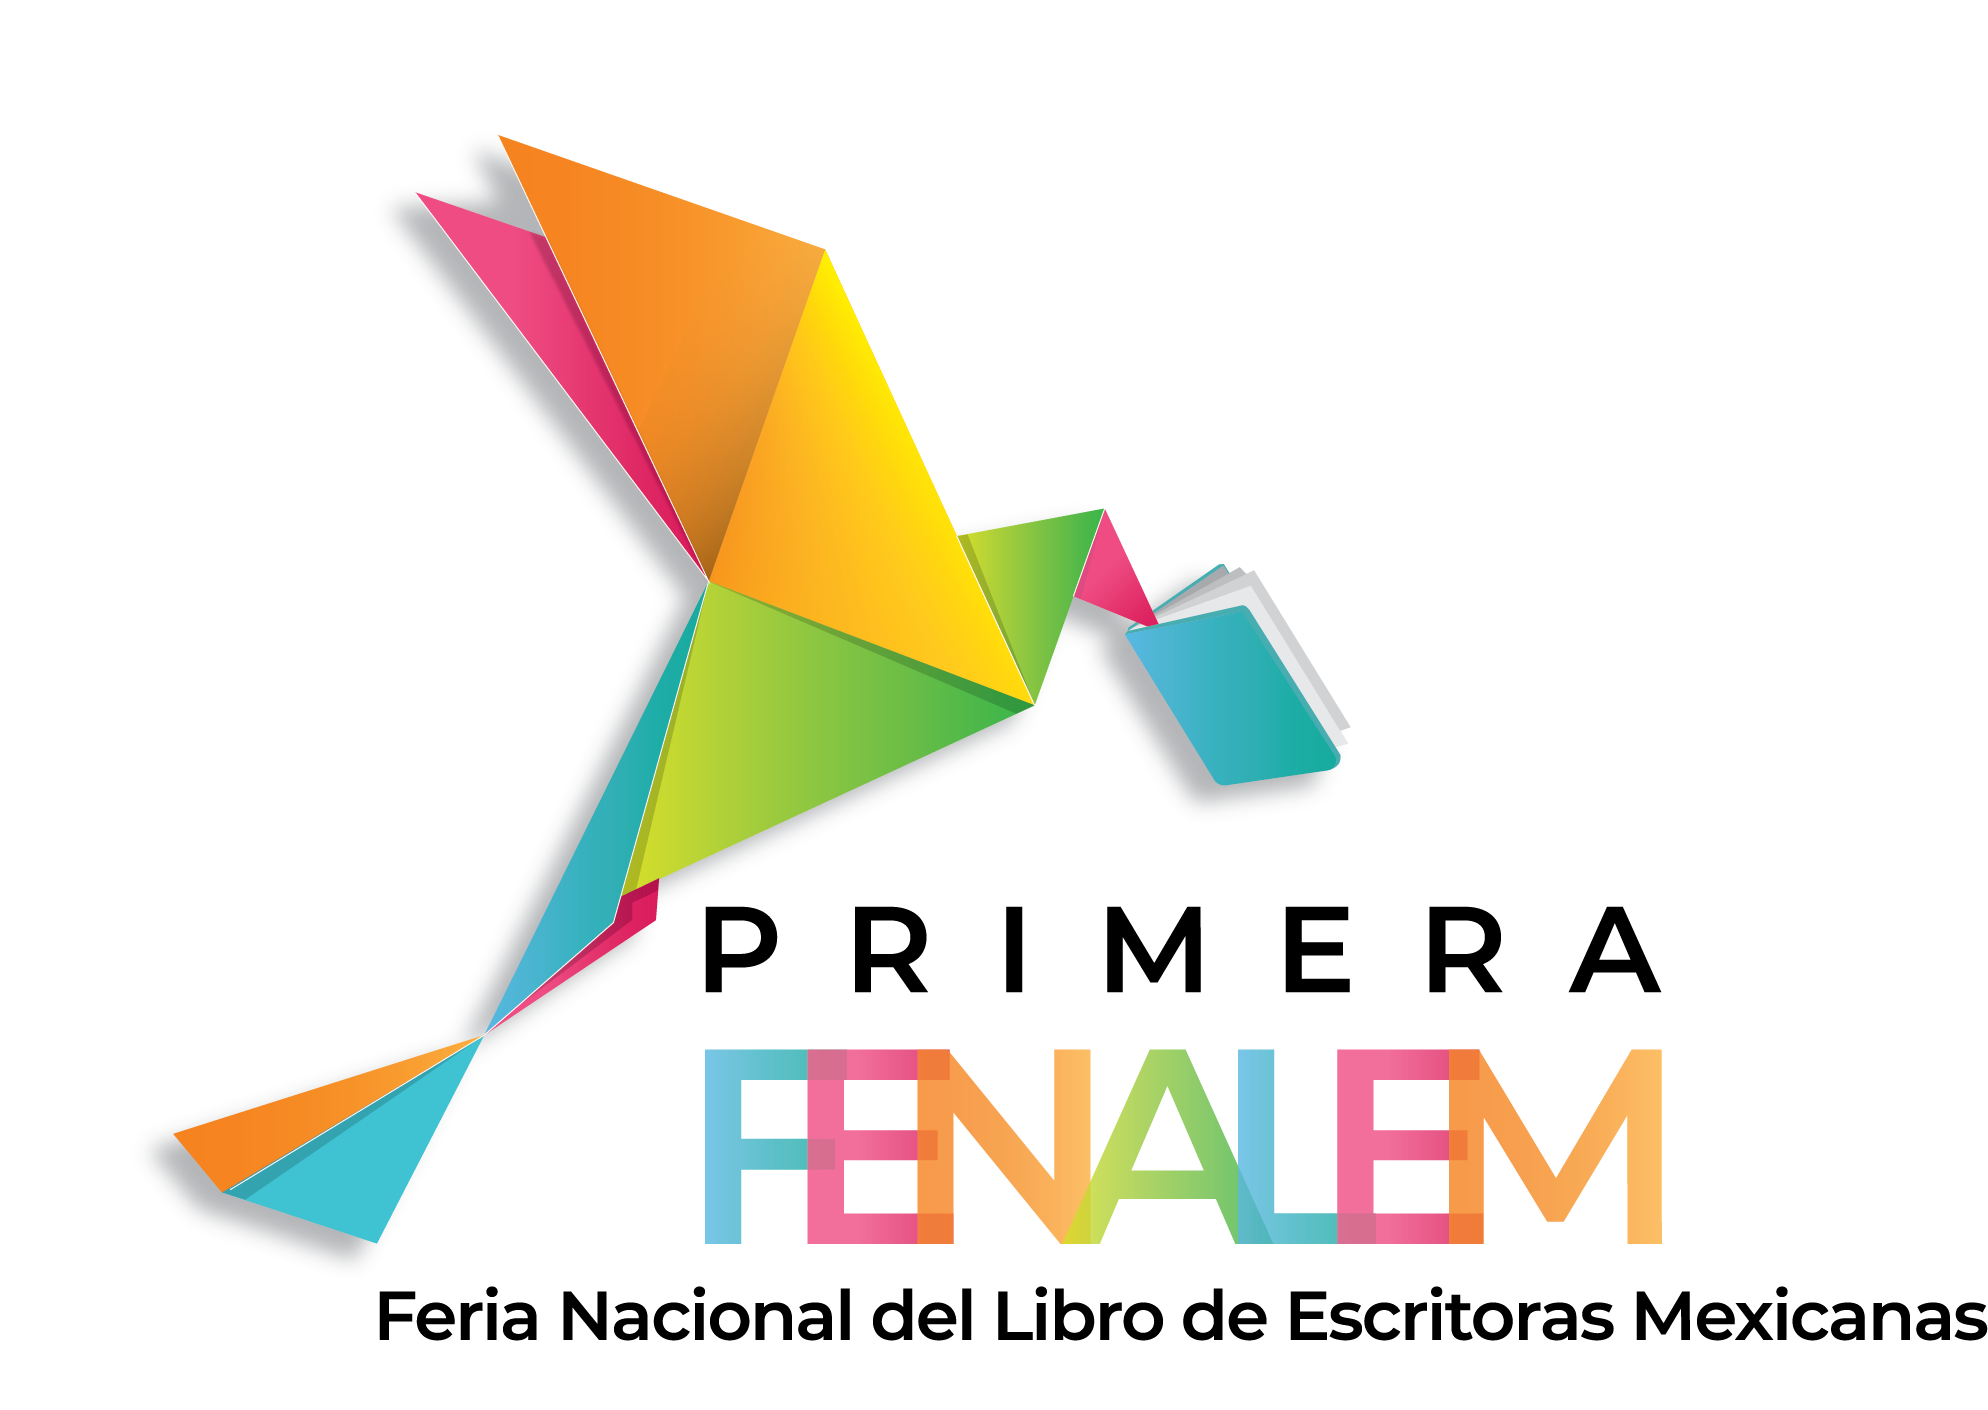 FENALEM: La primera Feria Nacional del Libro de Escritoras Mexicanas